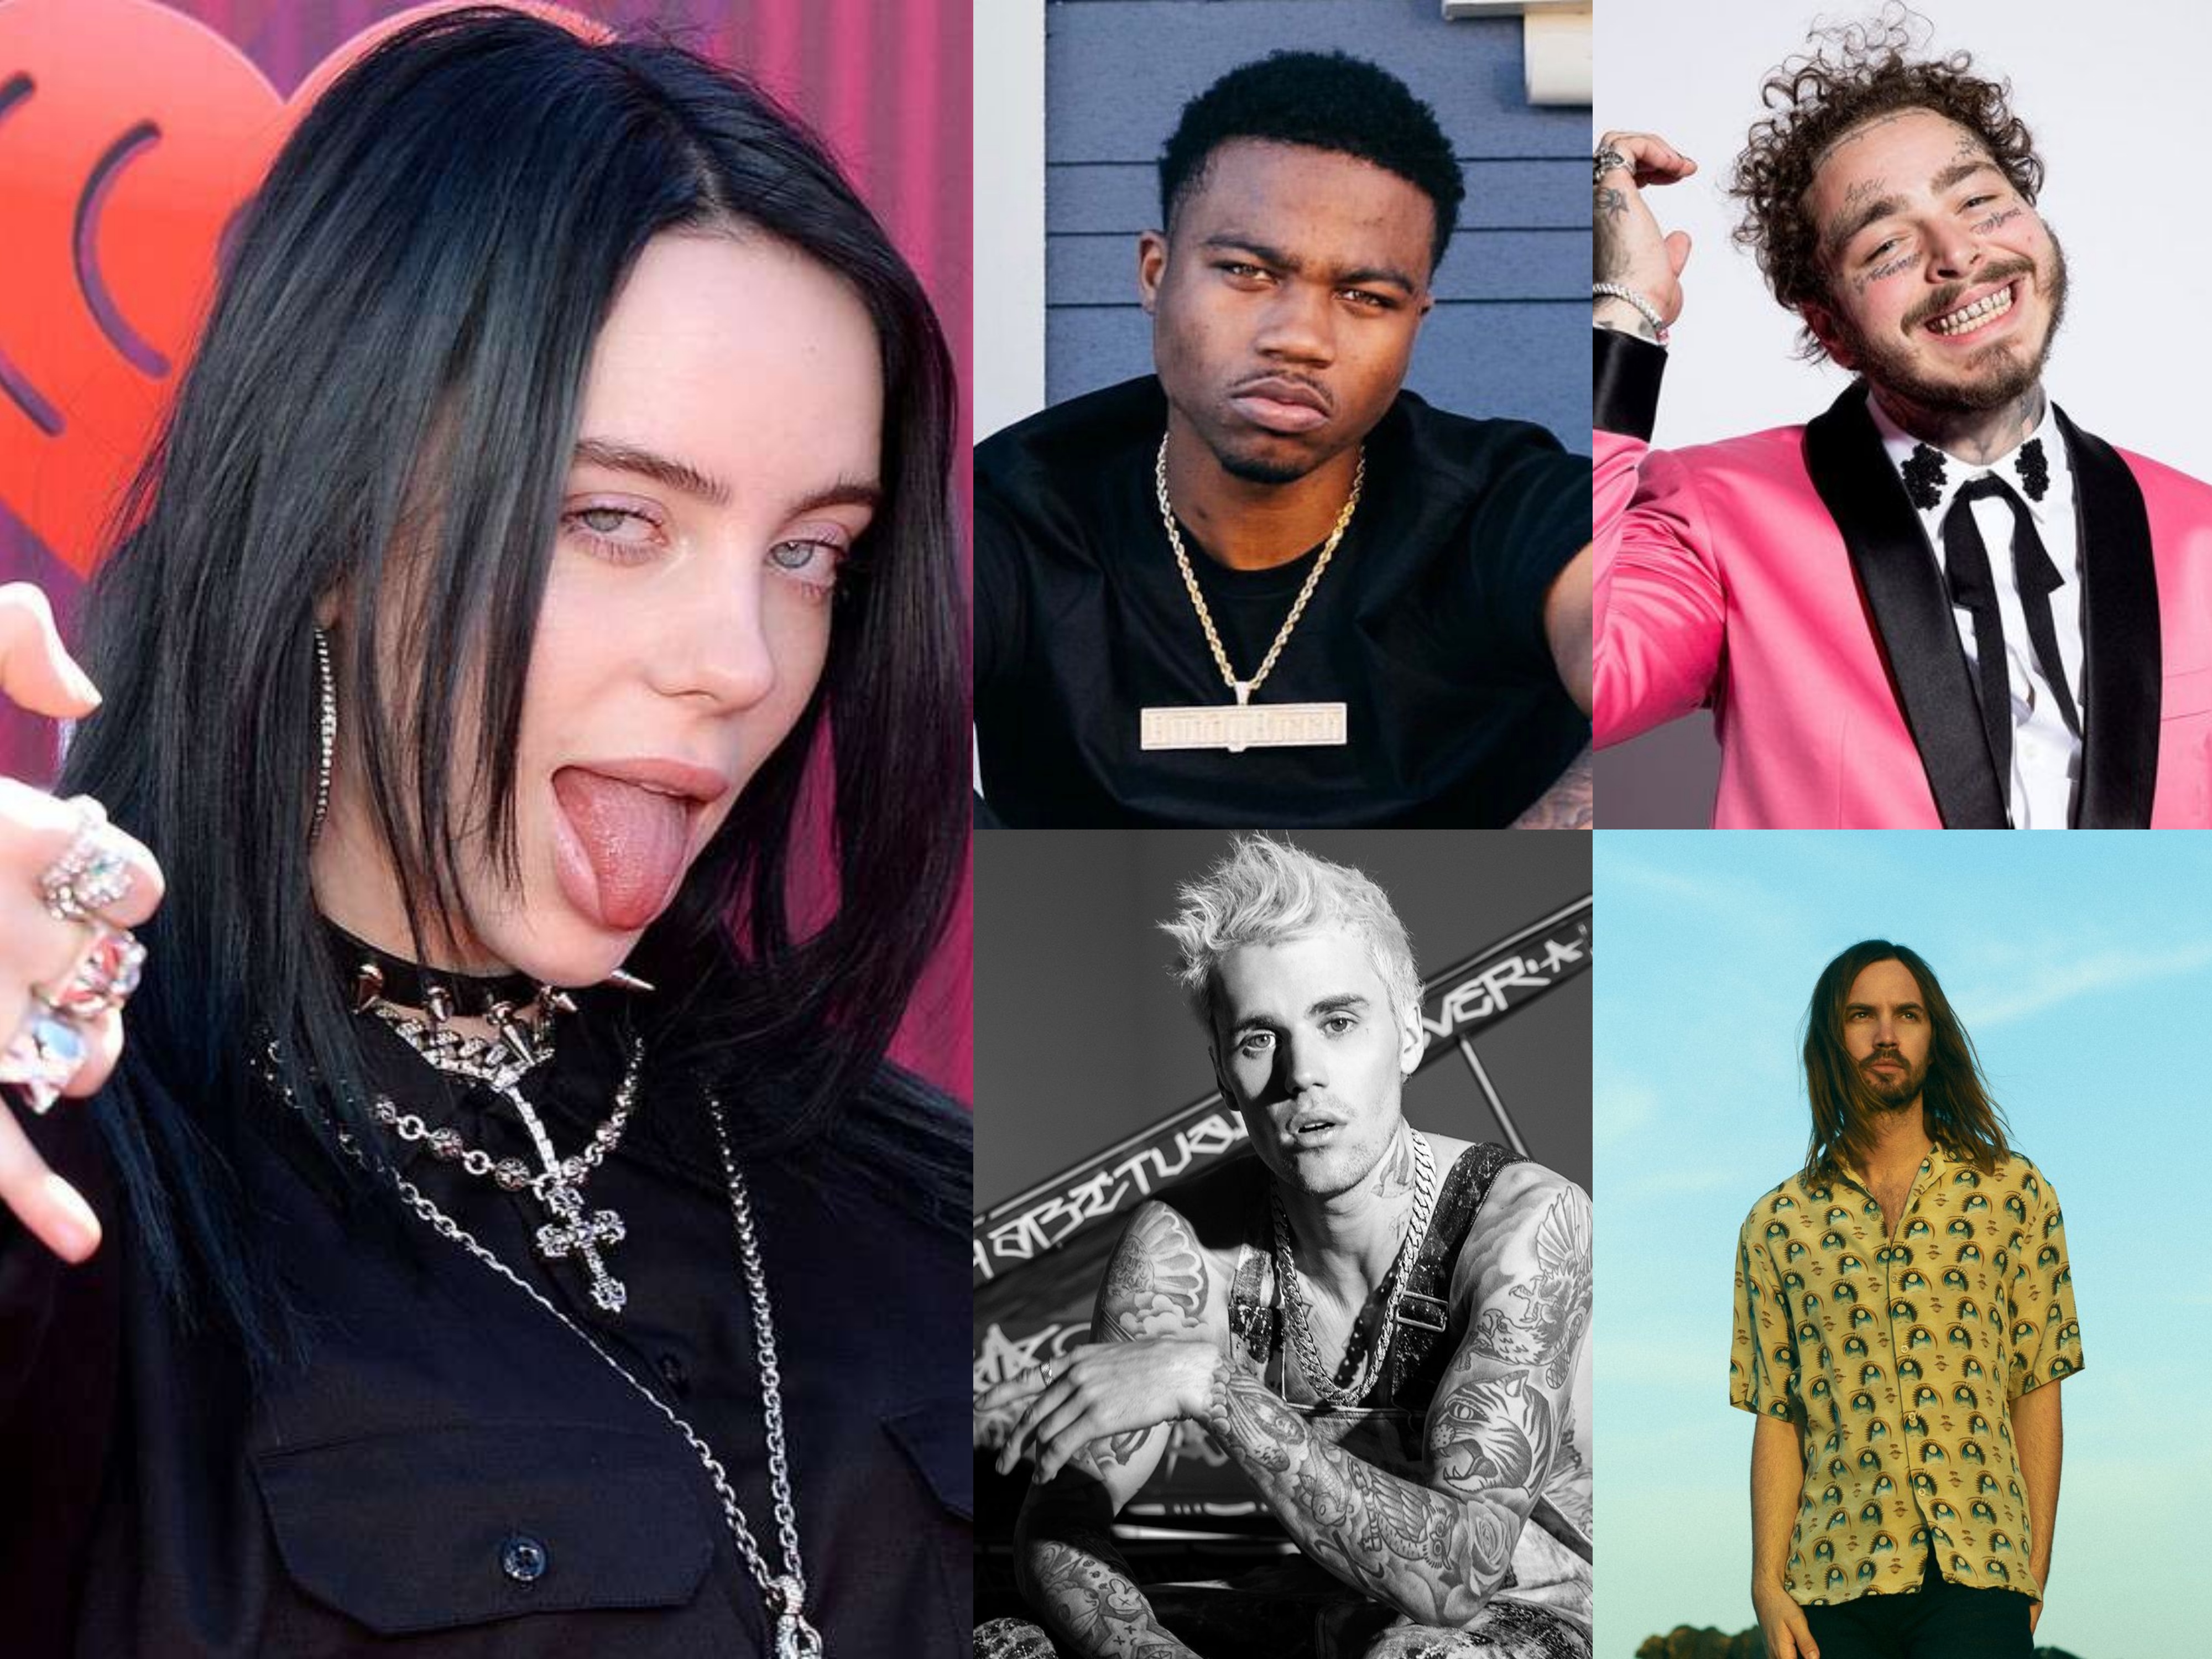 Top 5 artists in billboard this week